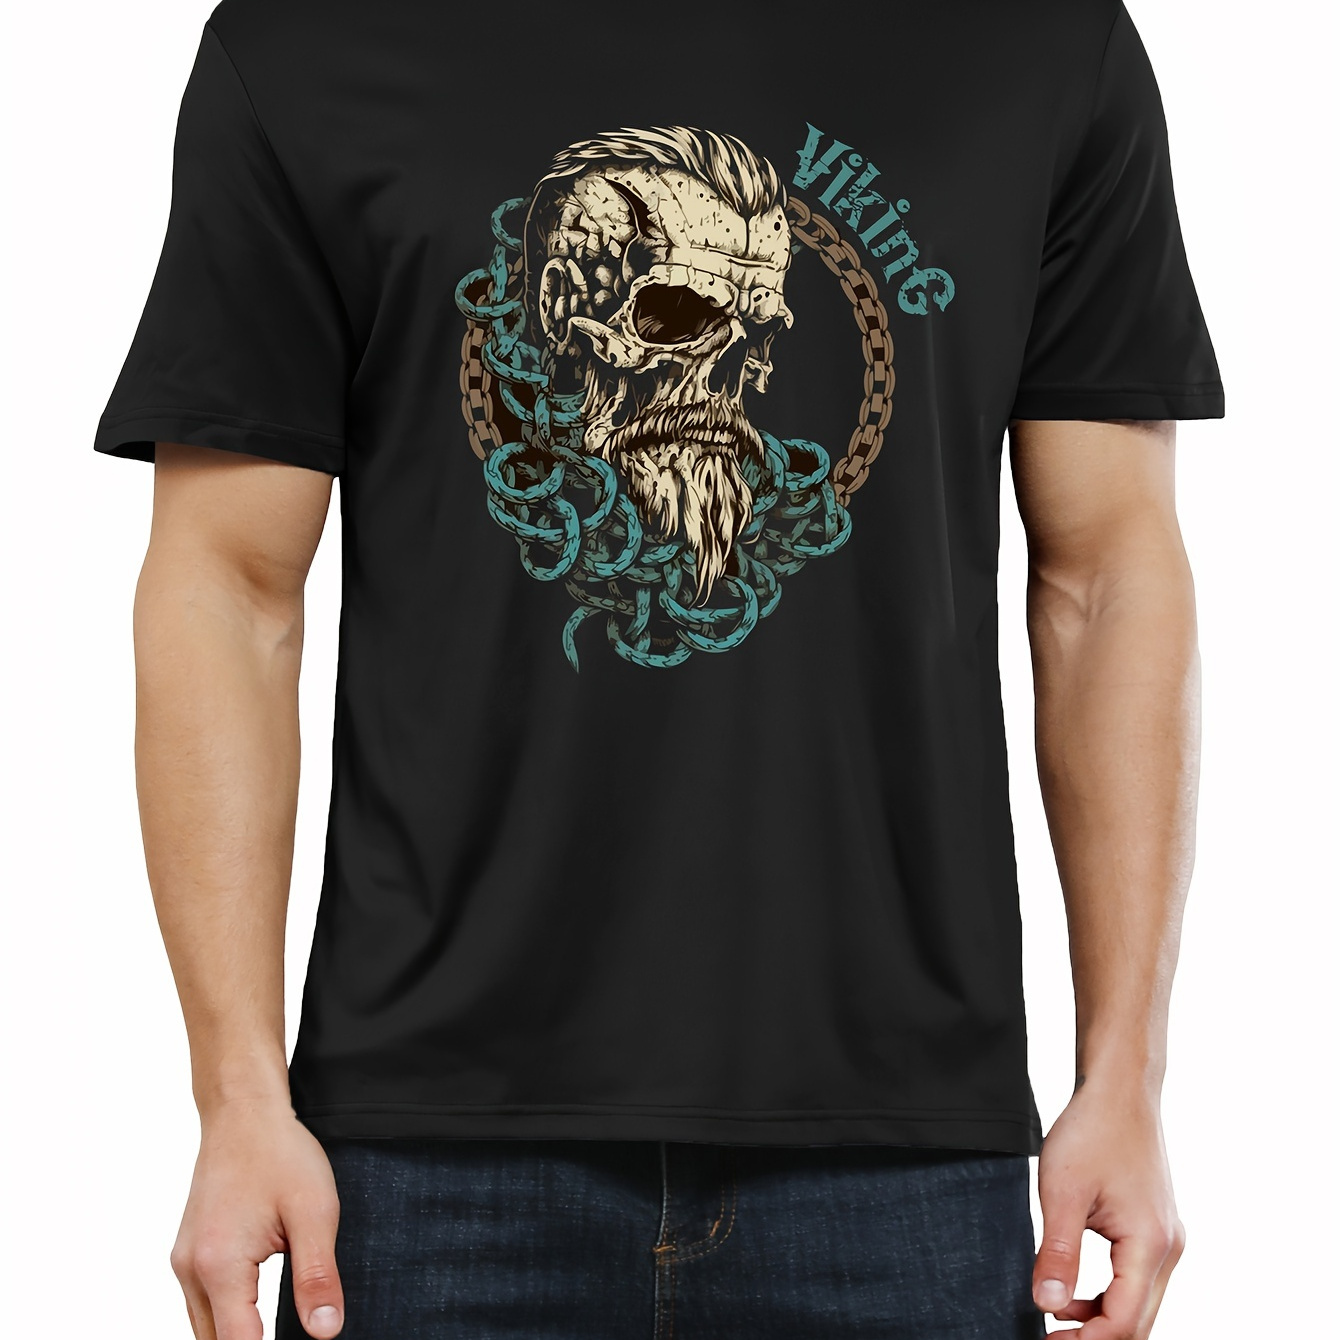 

Viking Skull Print Tee Shirt, Tees For Men, Casual Short Sleeve T-shirt For Summer